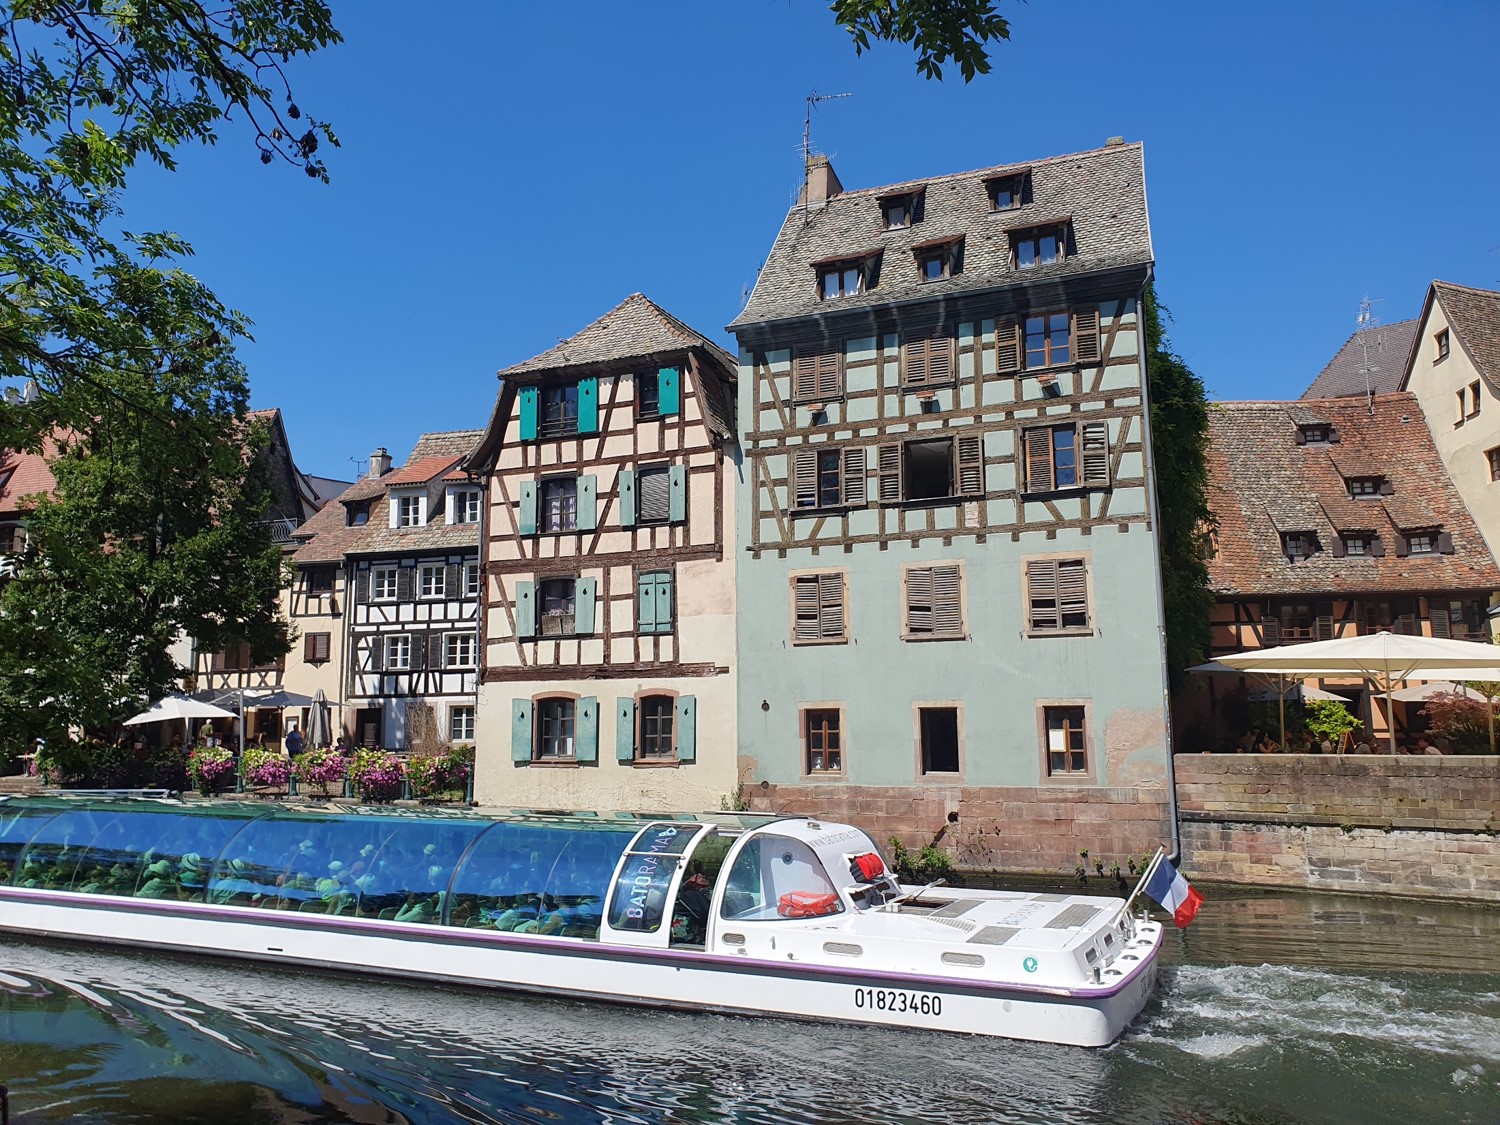 Visiter Strasbourg: Que faire et voir en 1, 2 ou 3 jours?